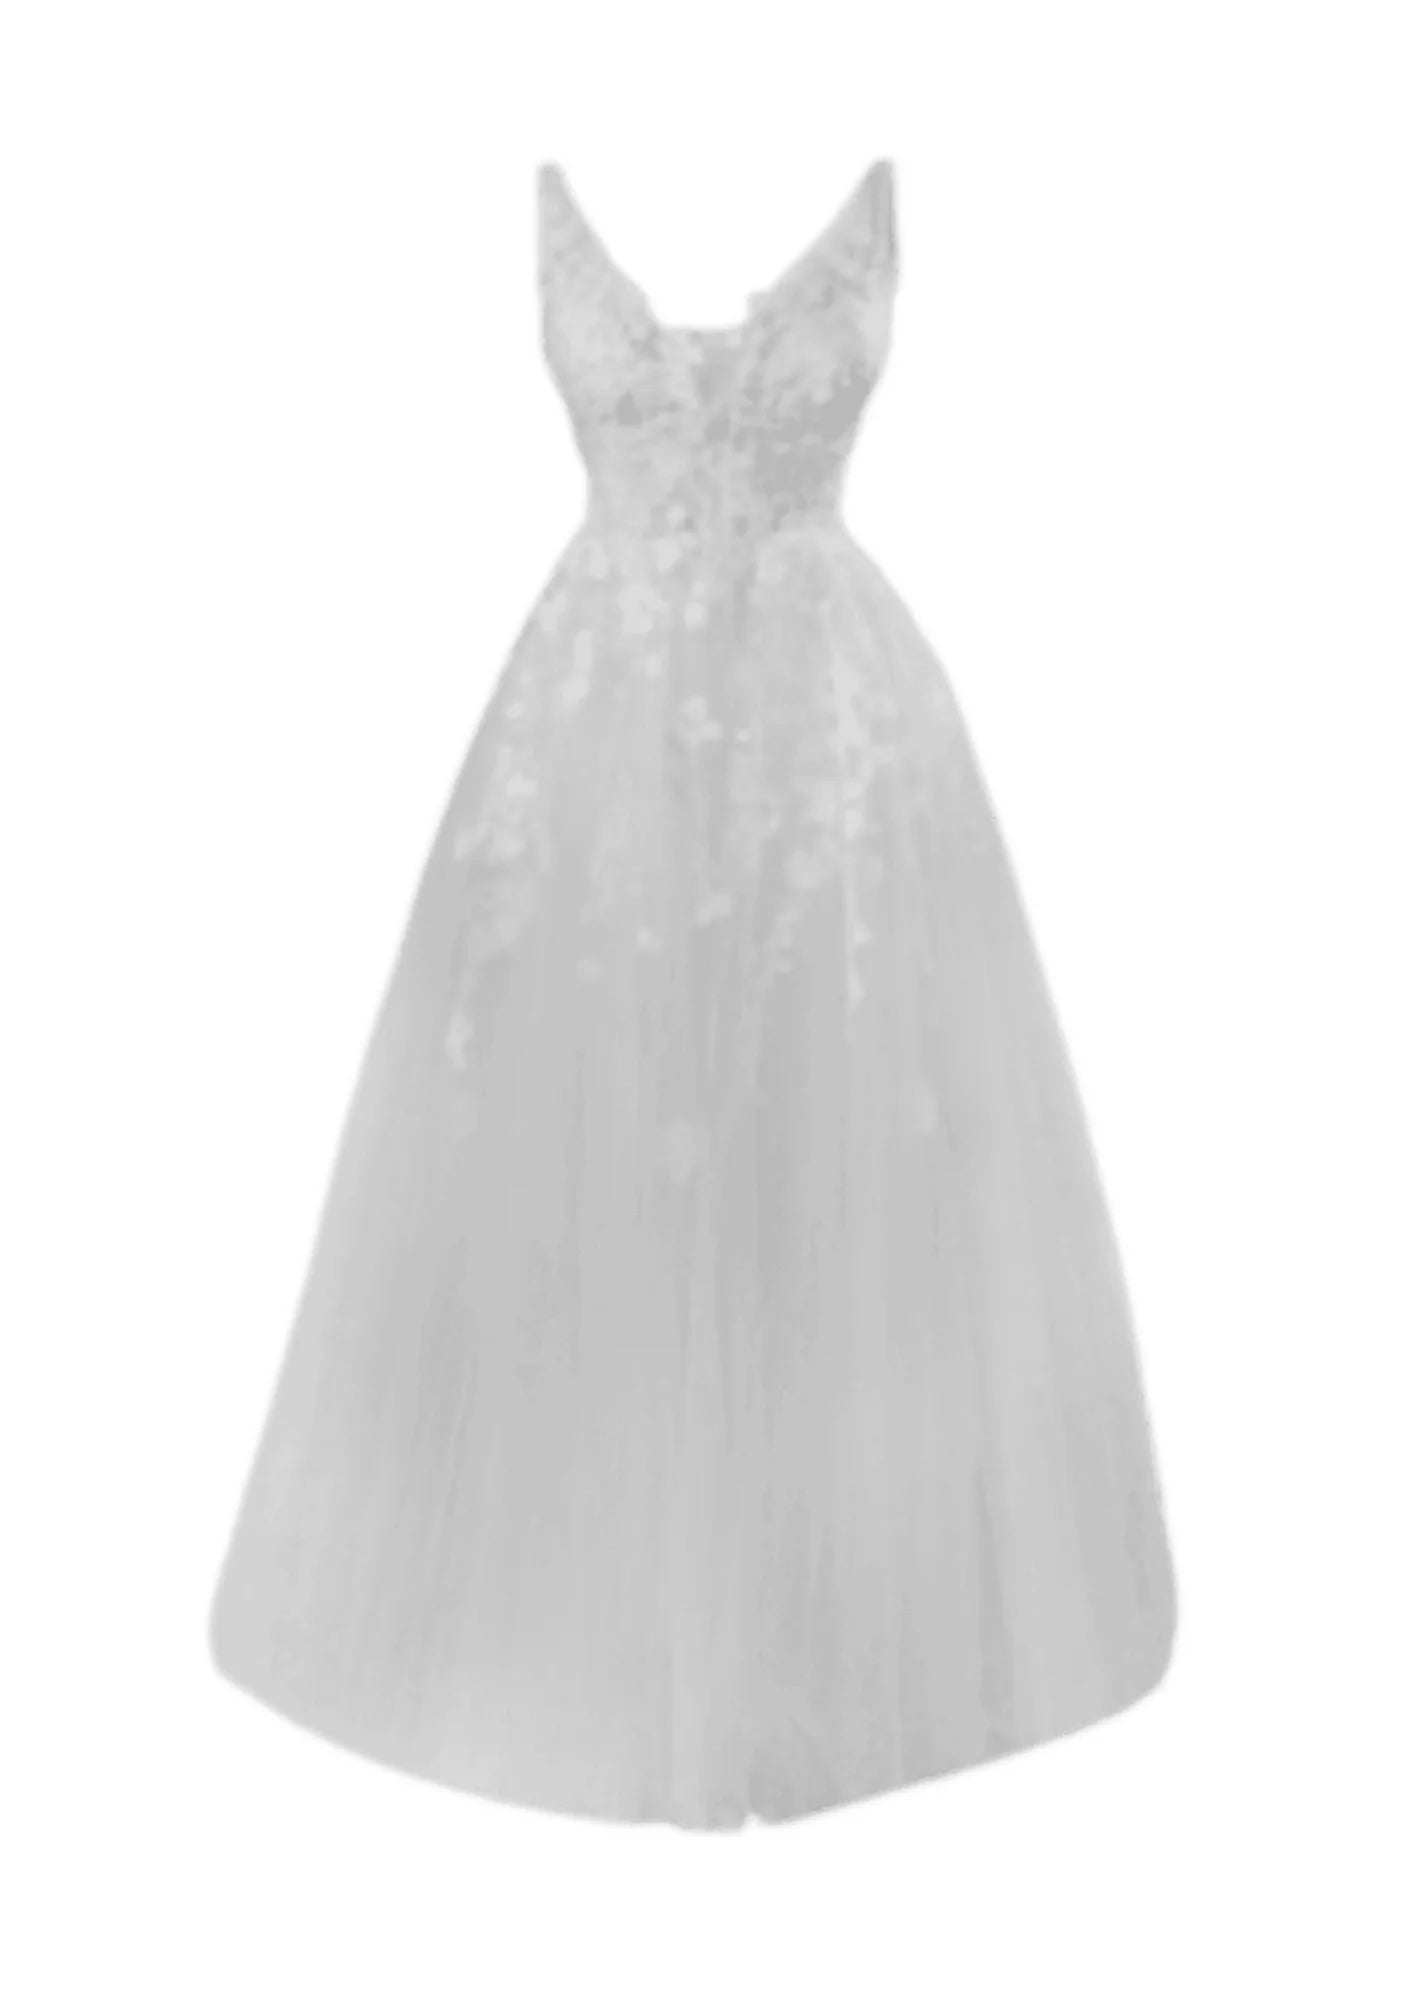 Weiß gestickte Hochzeitskleid